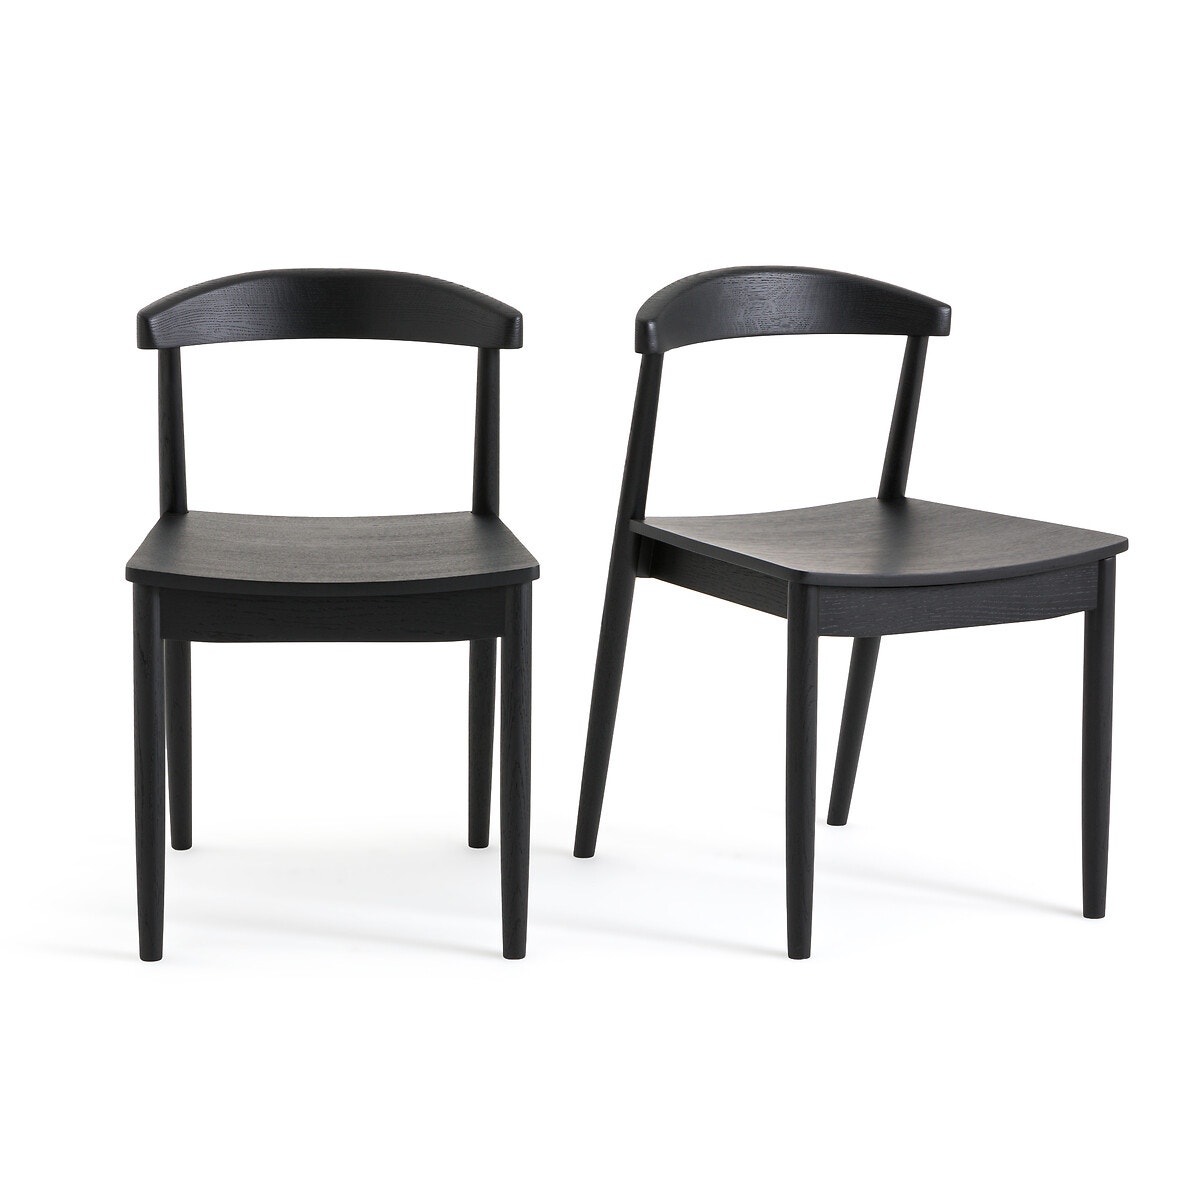 Σπίτι > Έπιπλα > Τραπεζαρία > Καρέκλες, σκαμπό, πάγκοι > Καρέκλες Σετ 2 καρέκλες από ξύλο δρυ σε μαύρο χρώμα